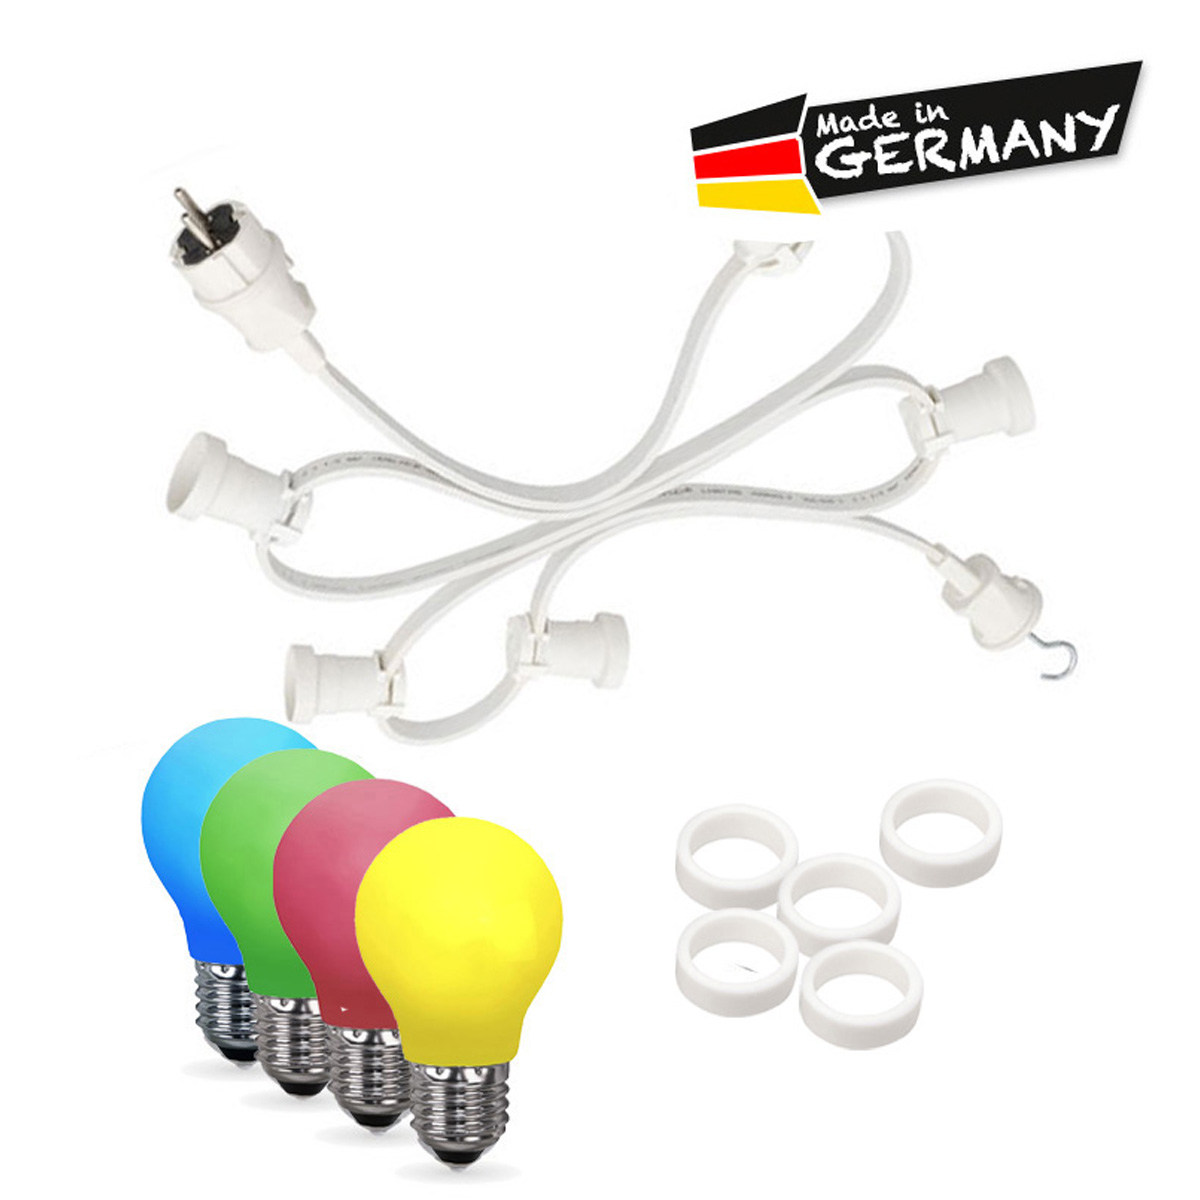 Illu-/Partylichterkette 50m | Außenlichterkette weiß | Made in Germany | 50 x bunte LED Tropfenlampe